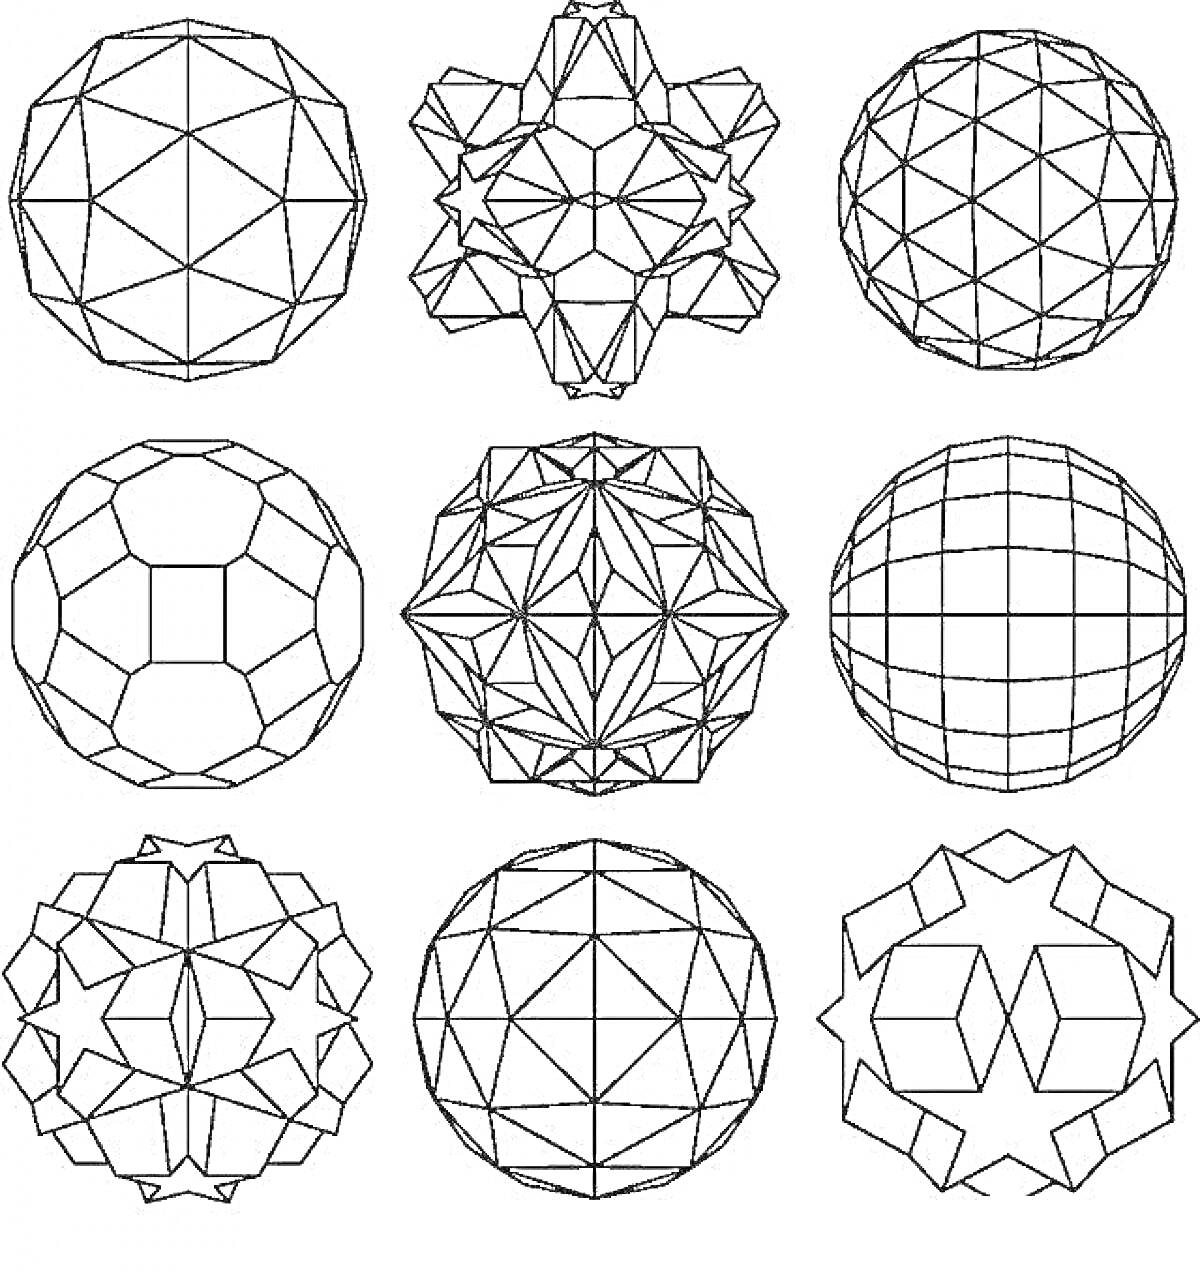 Раскраска Глобусы с геометрическими узорами, элементы: многогранники, линии, сетка, звезды